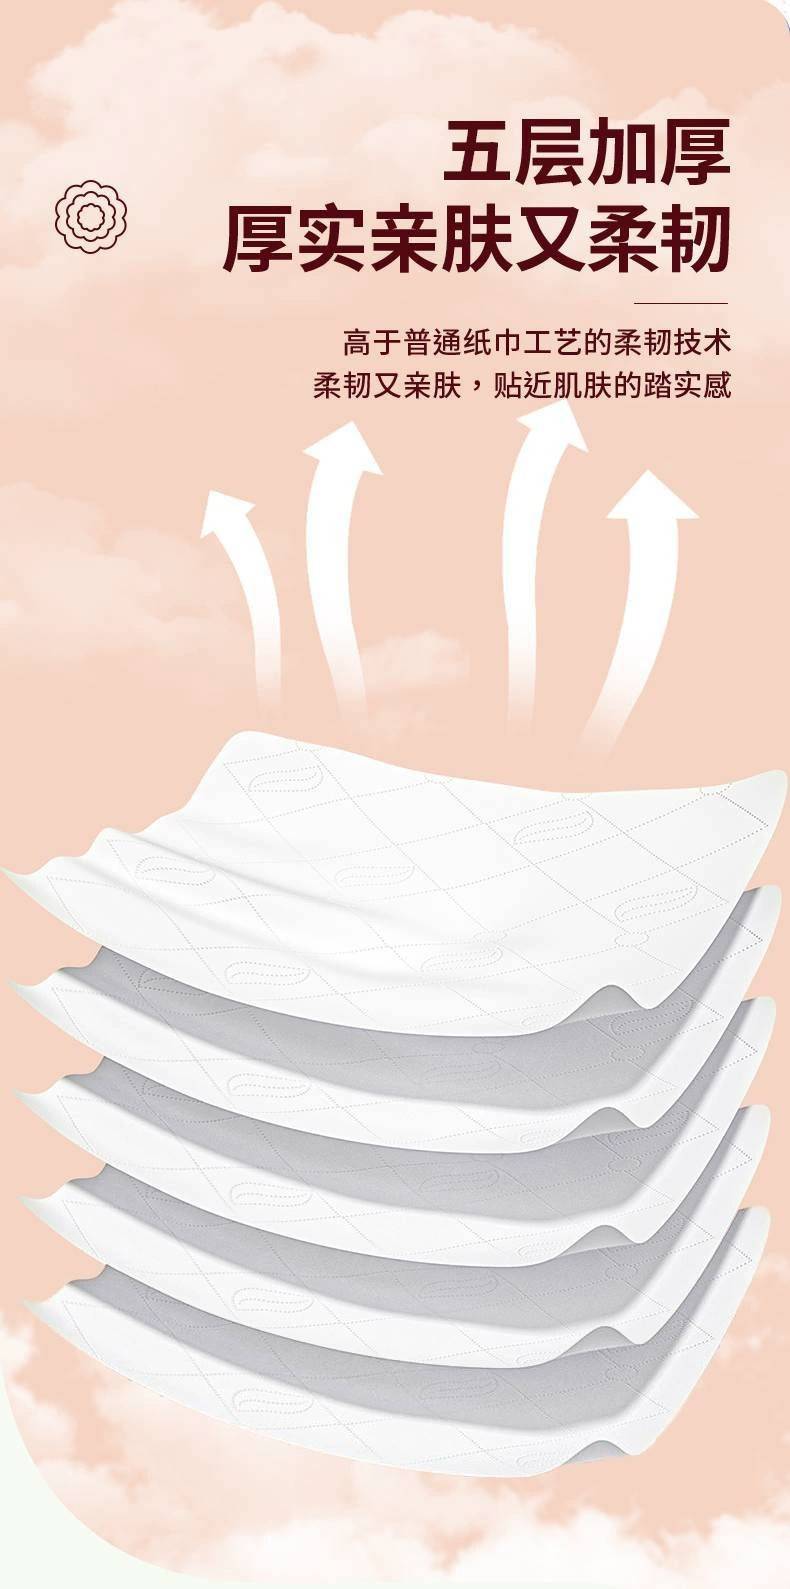 【10提券后43.9】悬挂式抽纸家用卫生纸亲肤柔韧面巾纸加大加厚纸巾